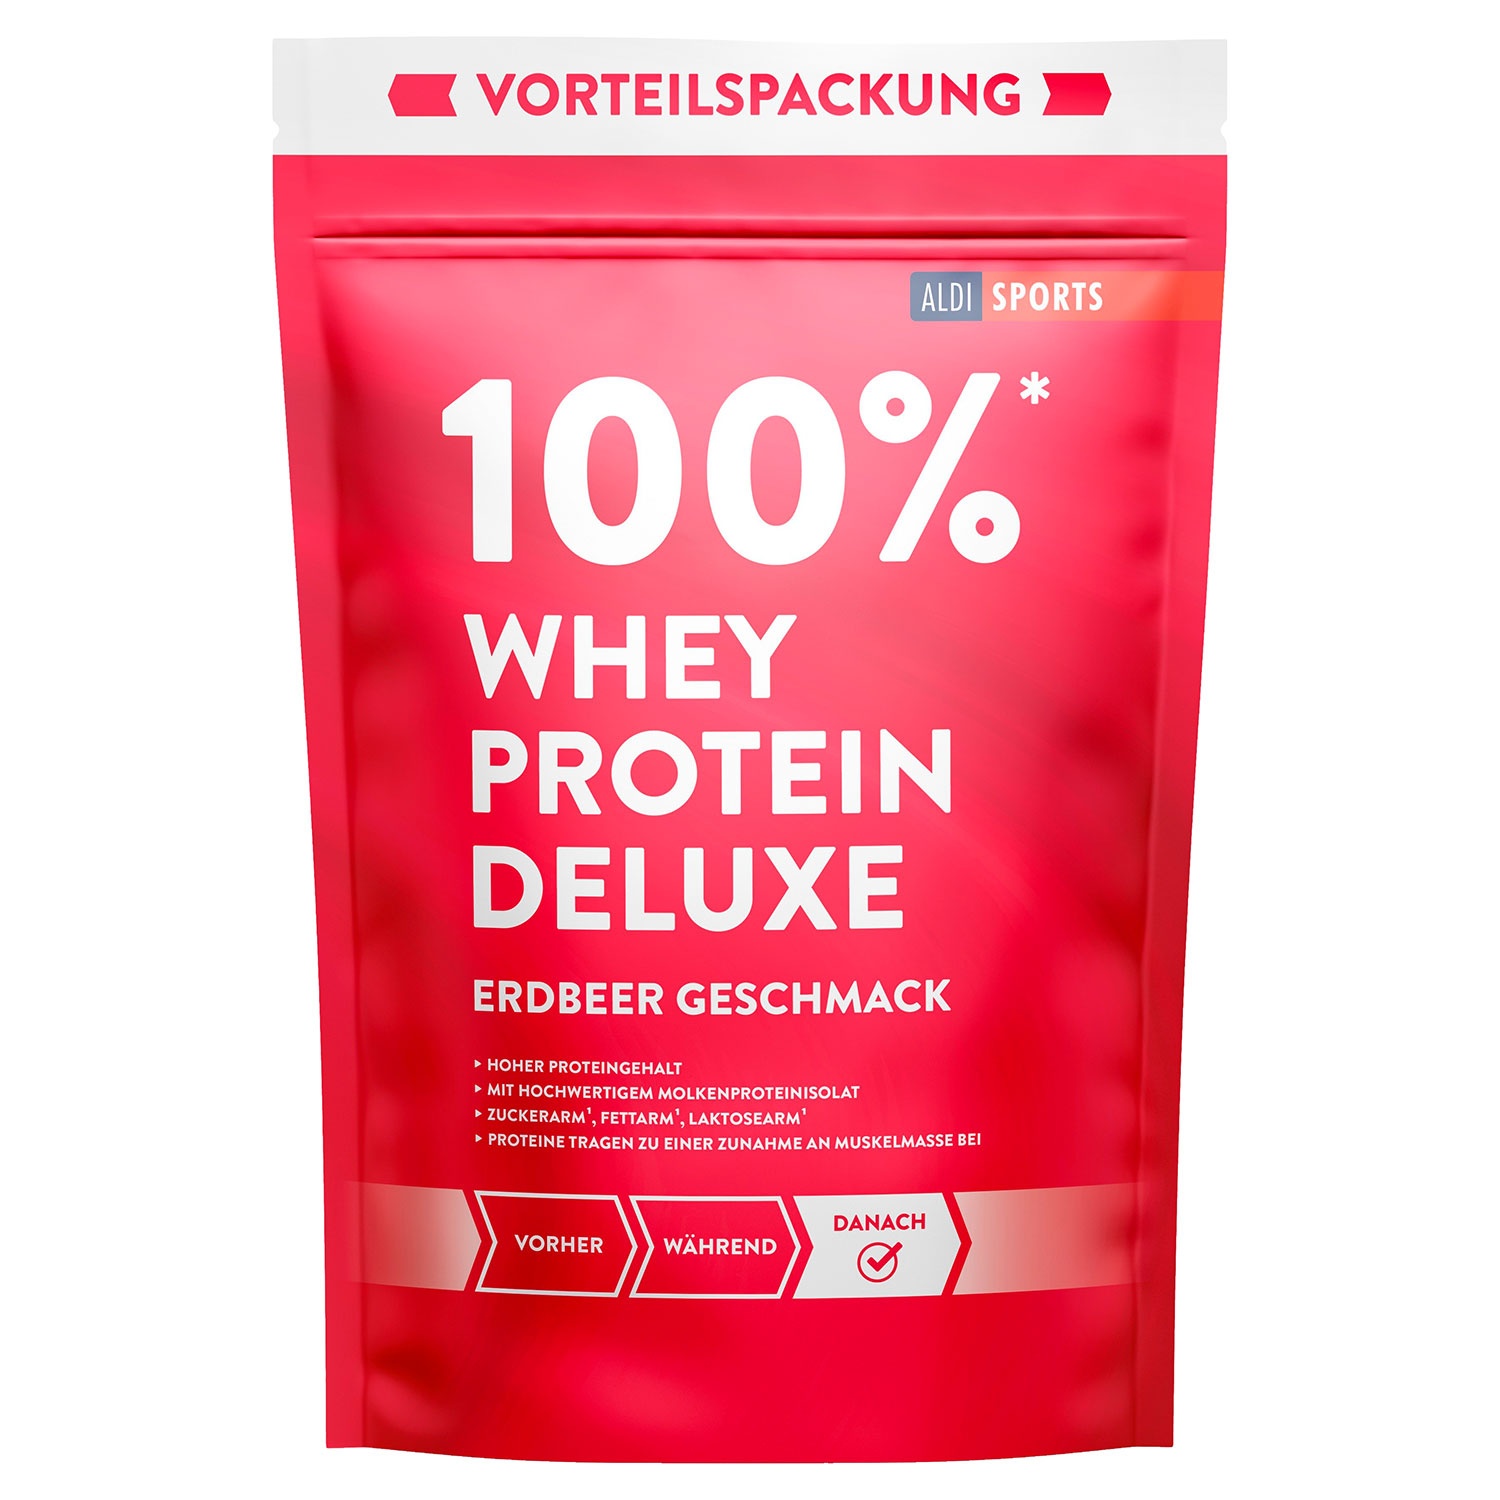 ALDI SPORTS Whey Protein Deluxe 1020 g